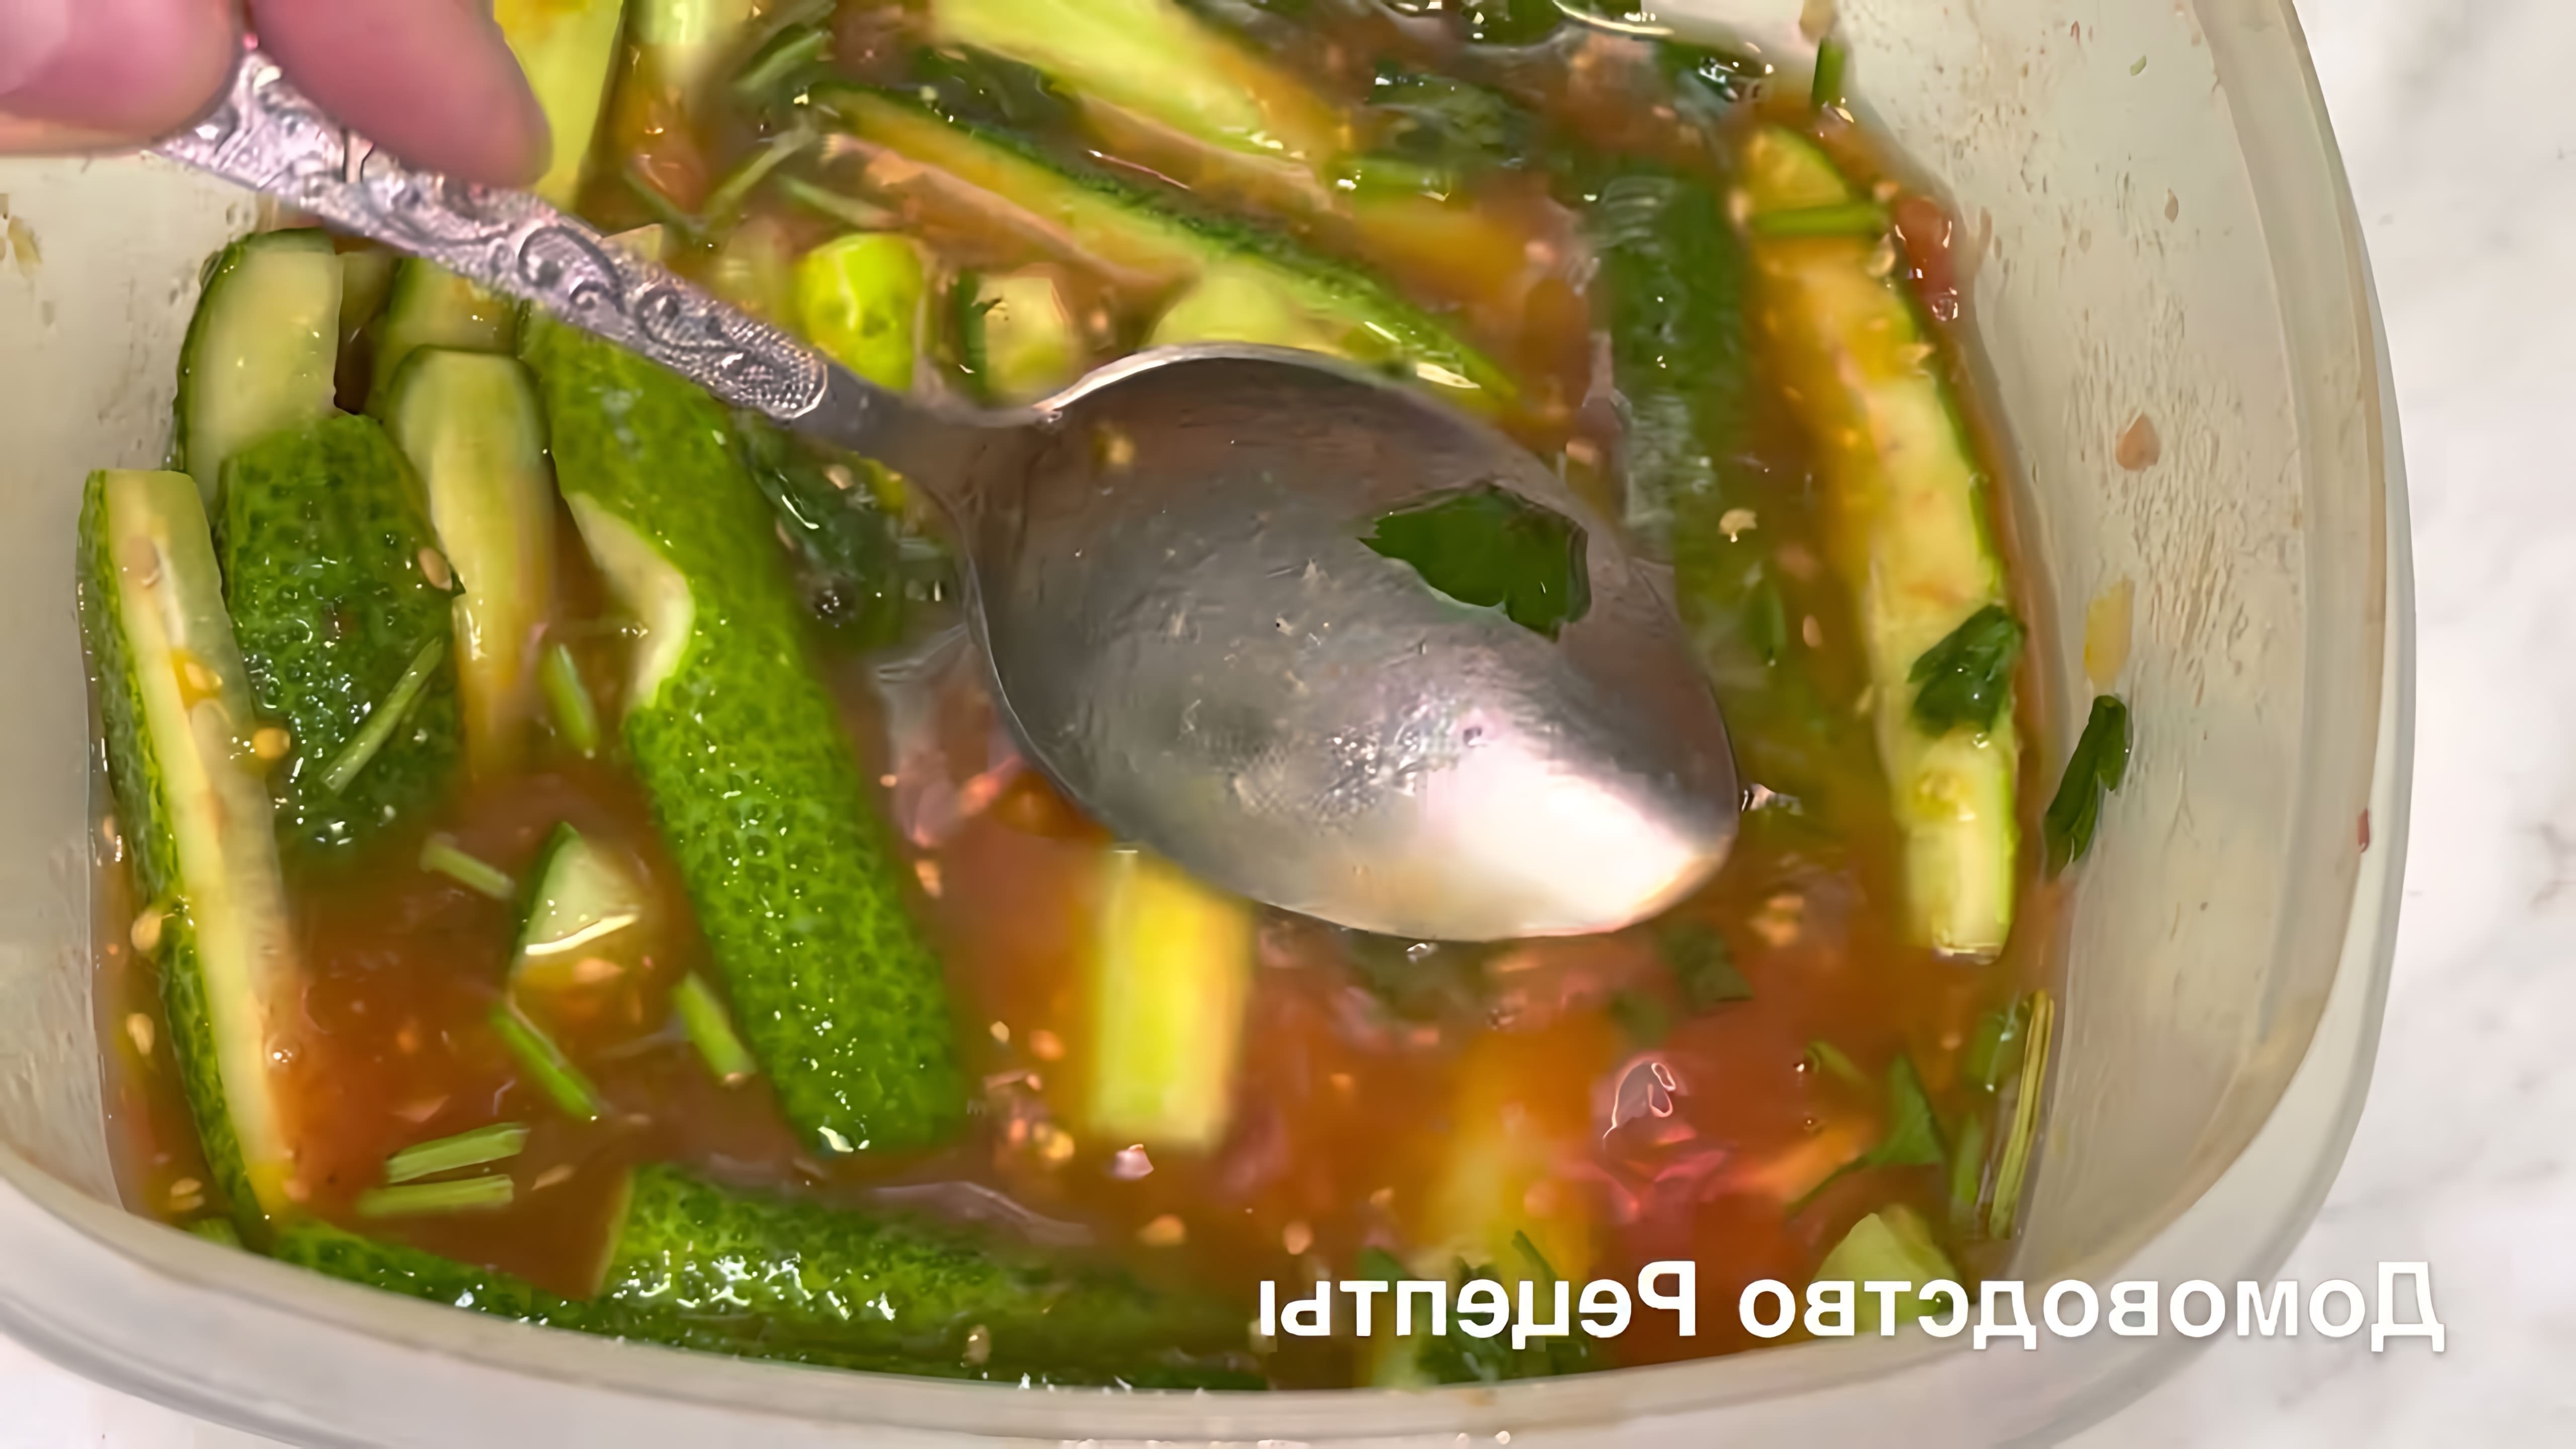 В этом видео демонстрируется процесс приготовления малосольных огурцов в томатном соке